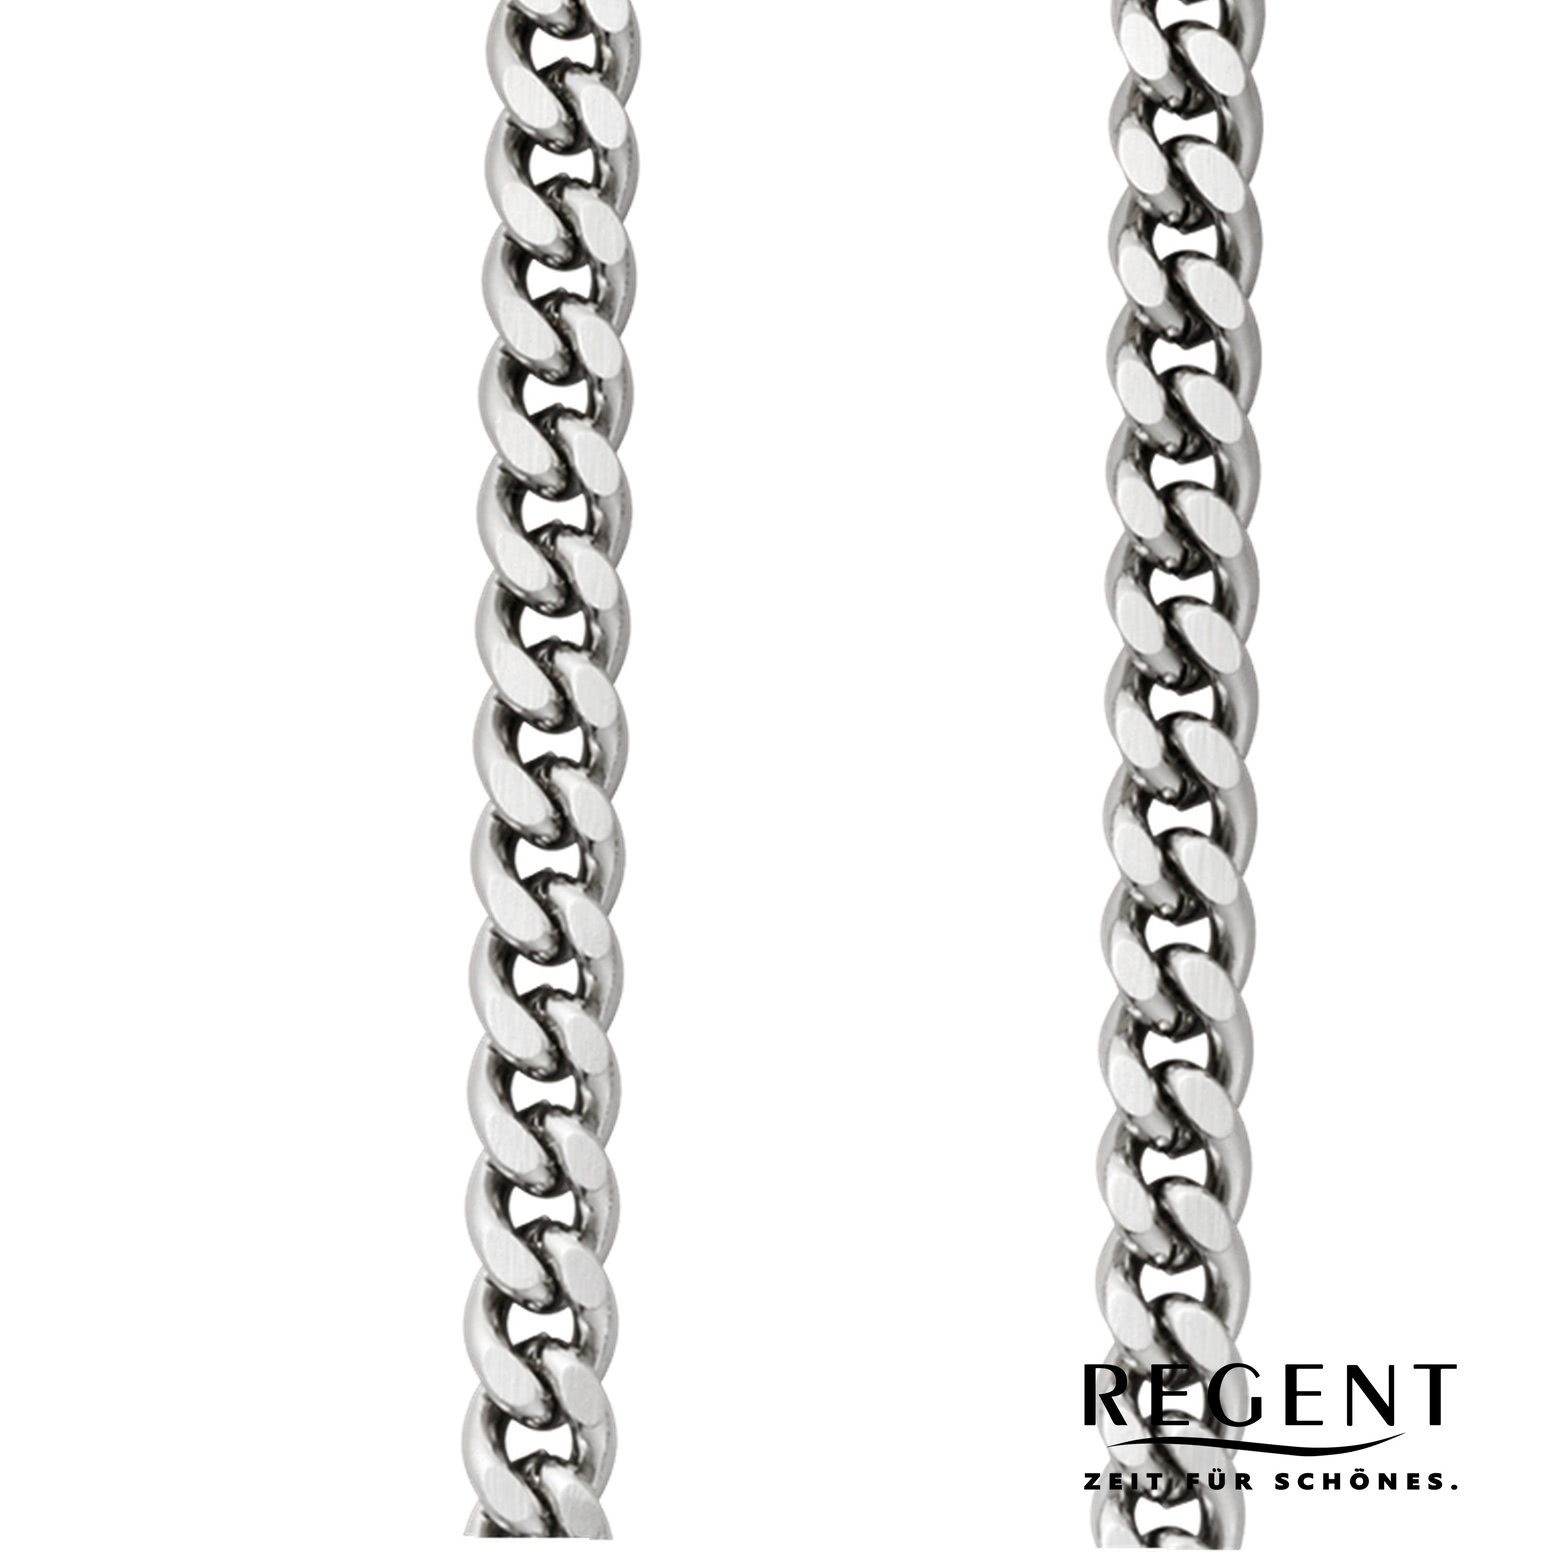 Herren Regent Kettenuhr Taschenuhrenkette, Elegant 5mm Regent Taschenuhren-Kette P-45,